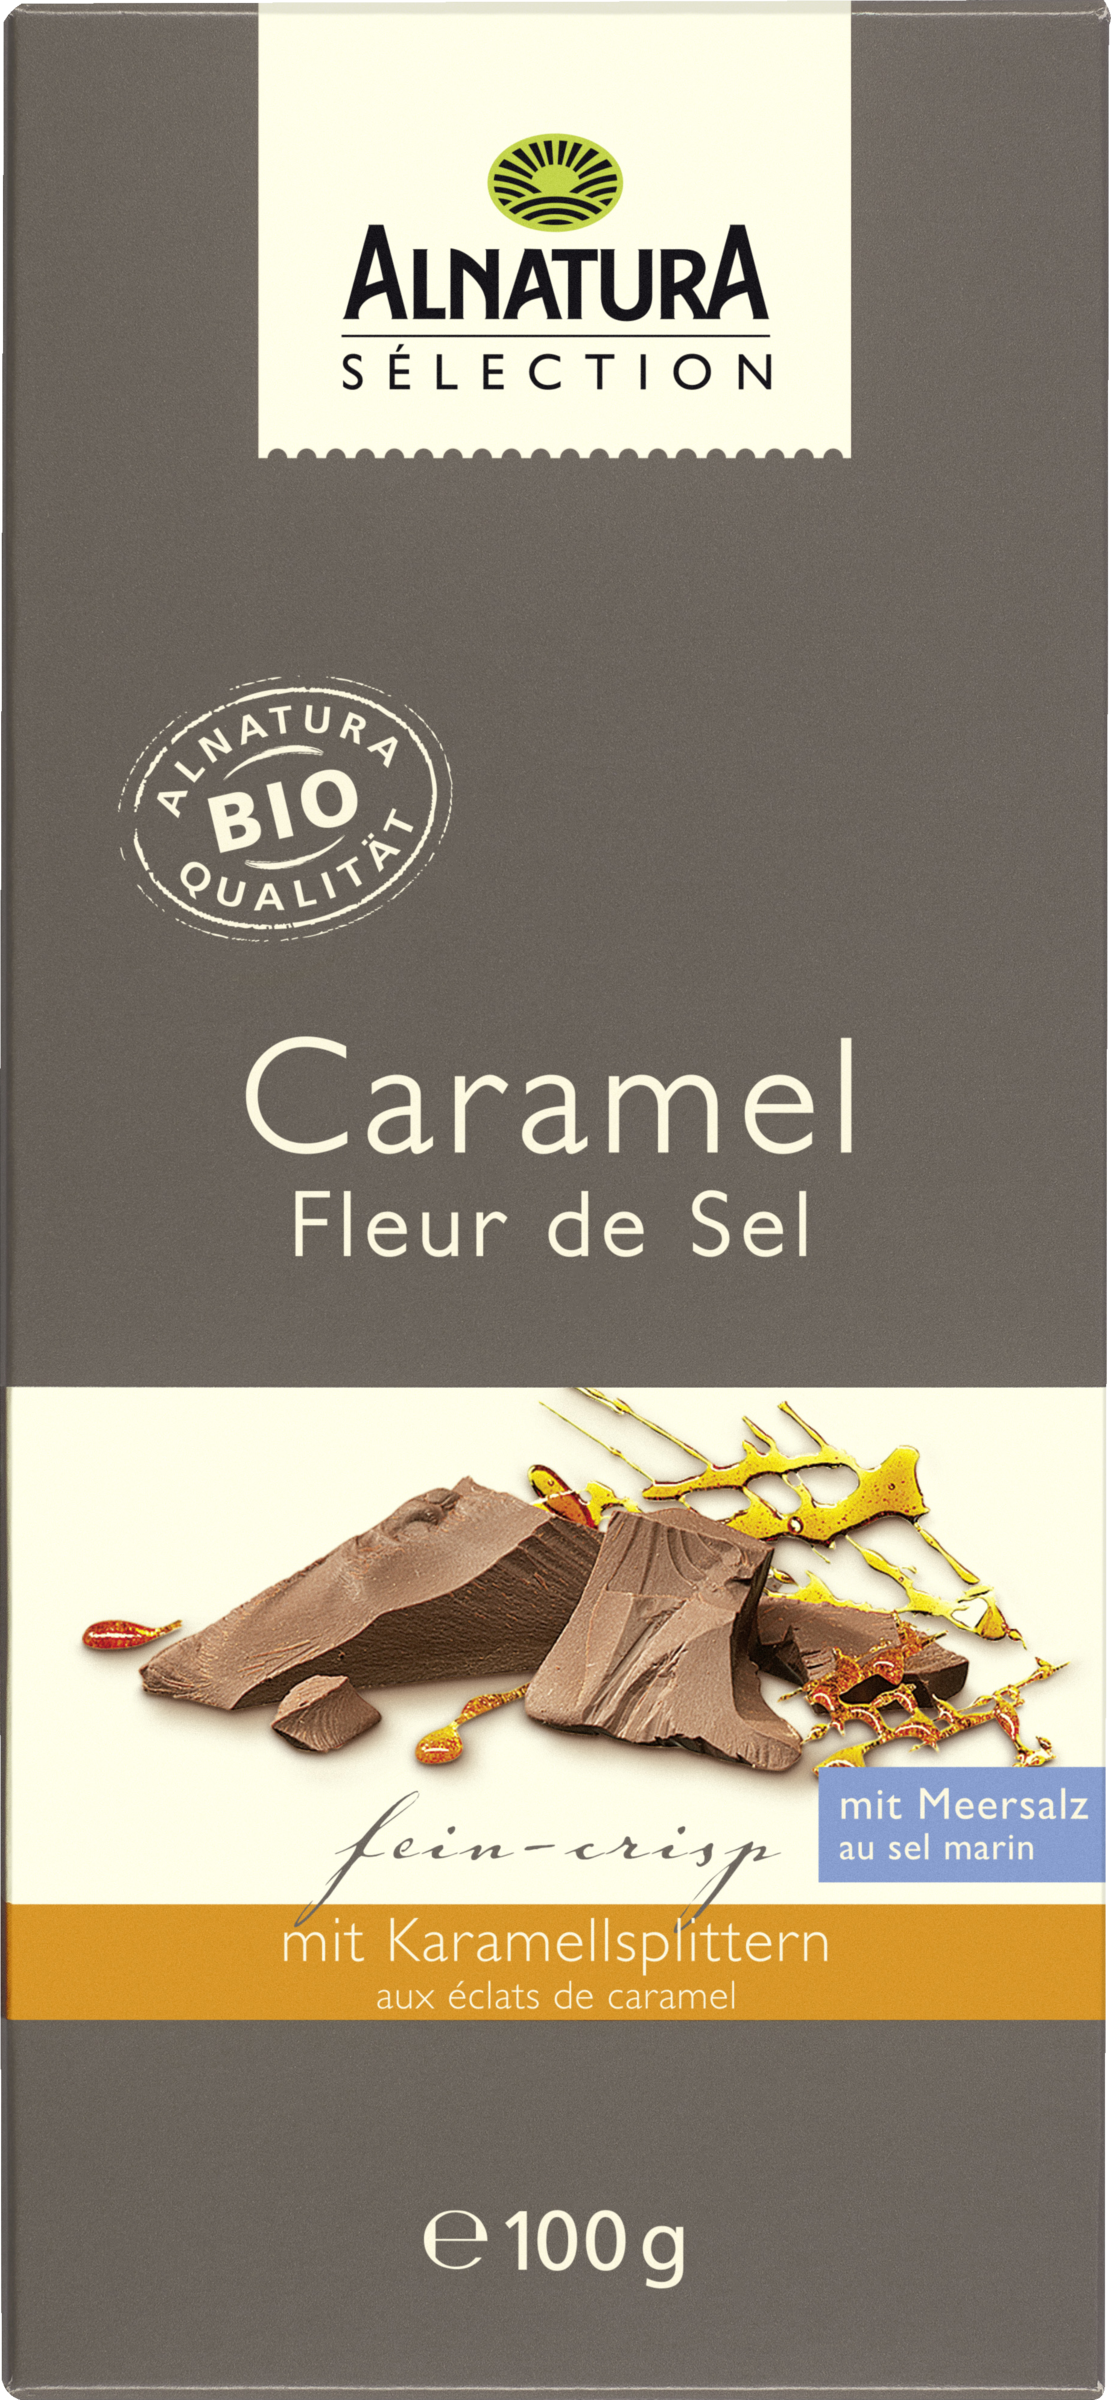 Alnatura Organic Chocolate Caramel Fleur de Sel